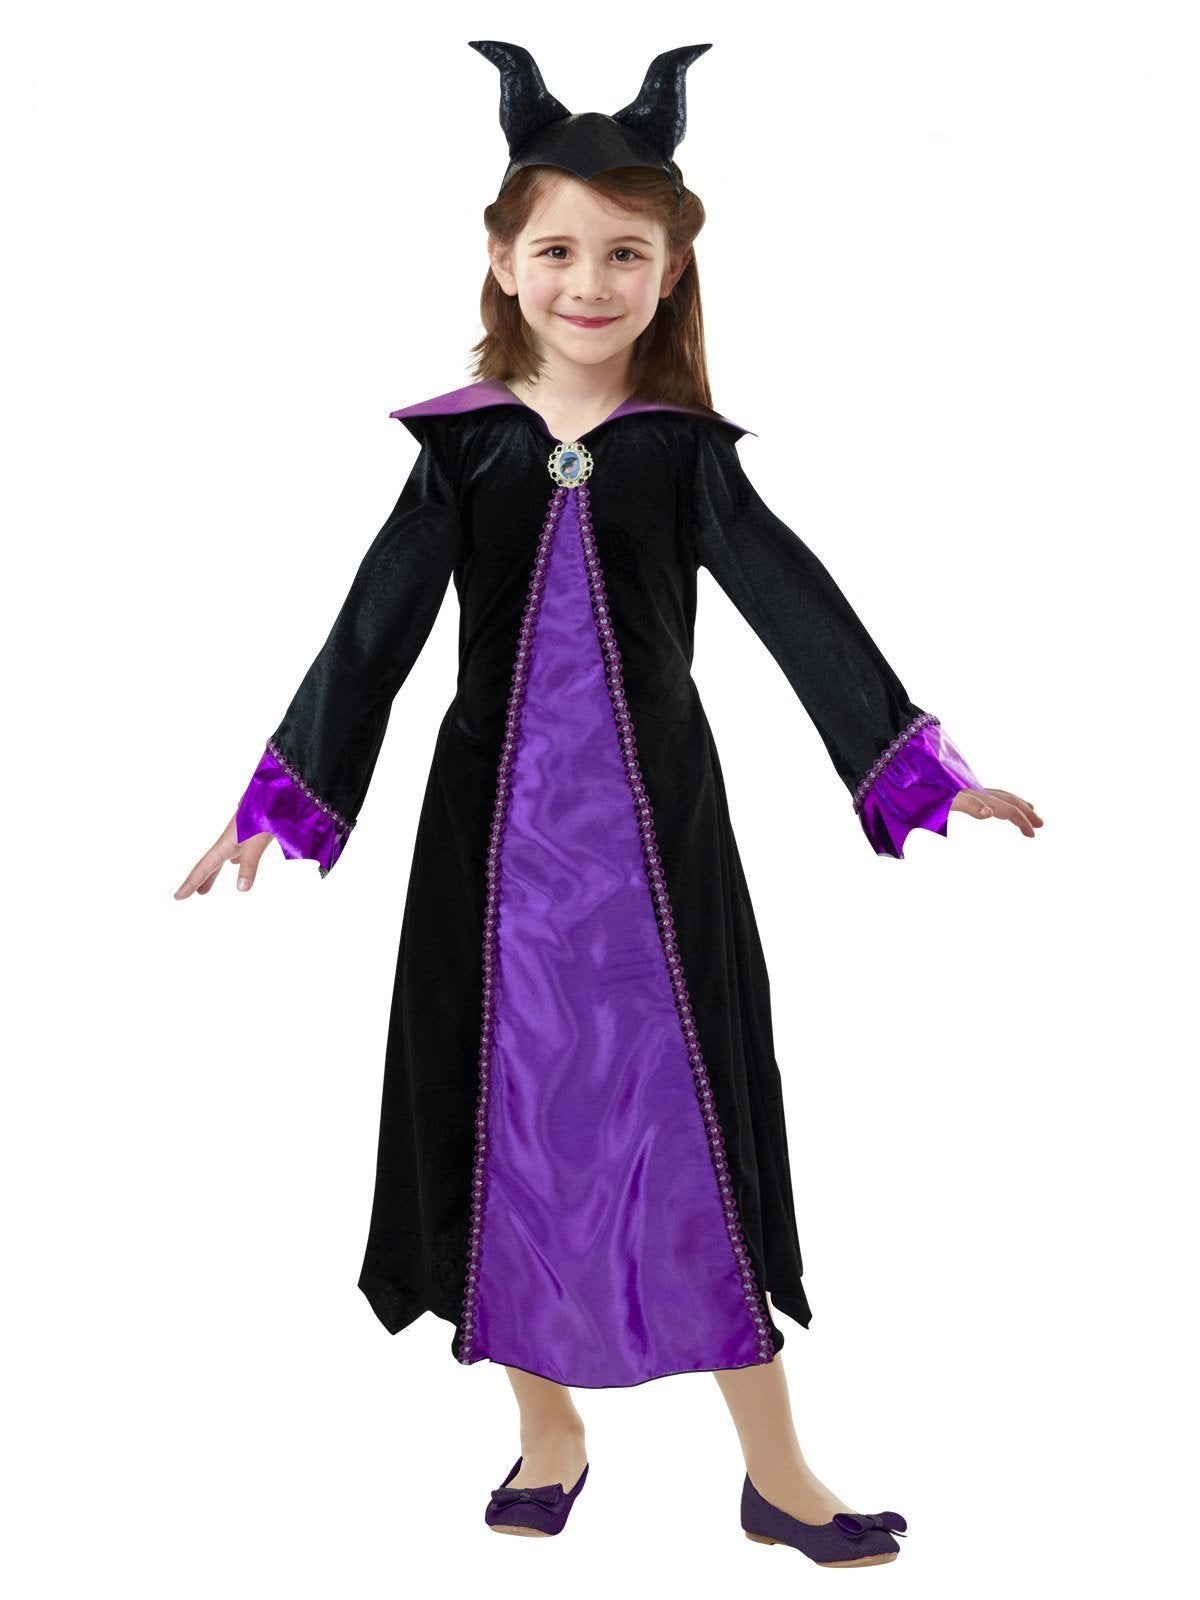 Maleficent Deluxe Costume for Kids & Tweens - Disney Sleeping Beauty